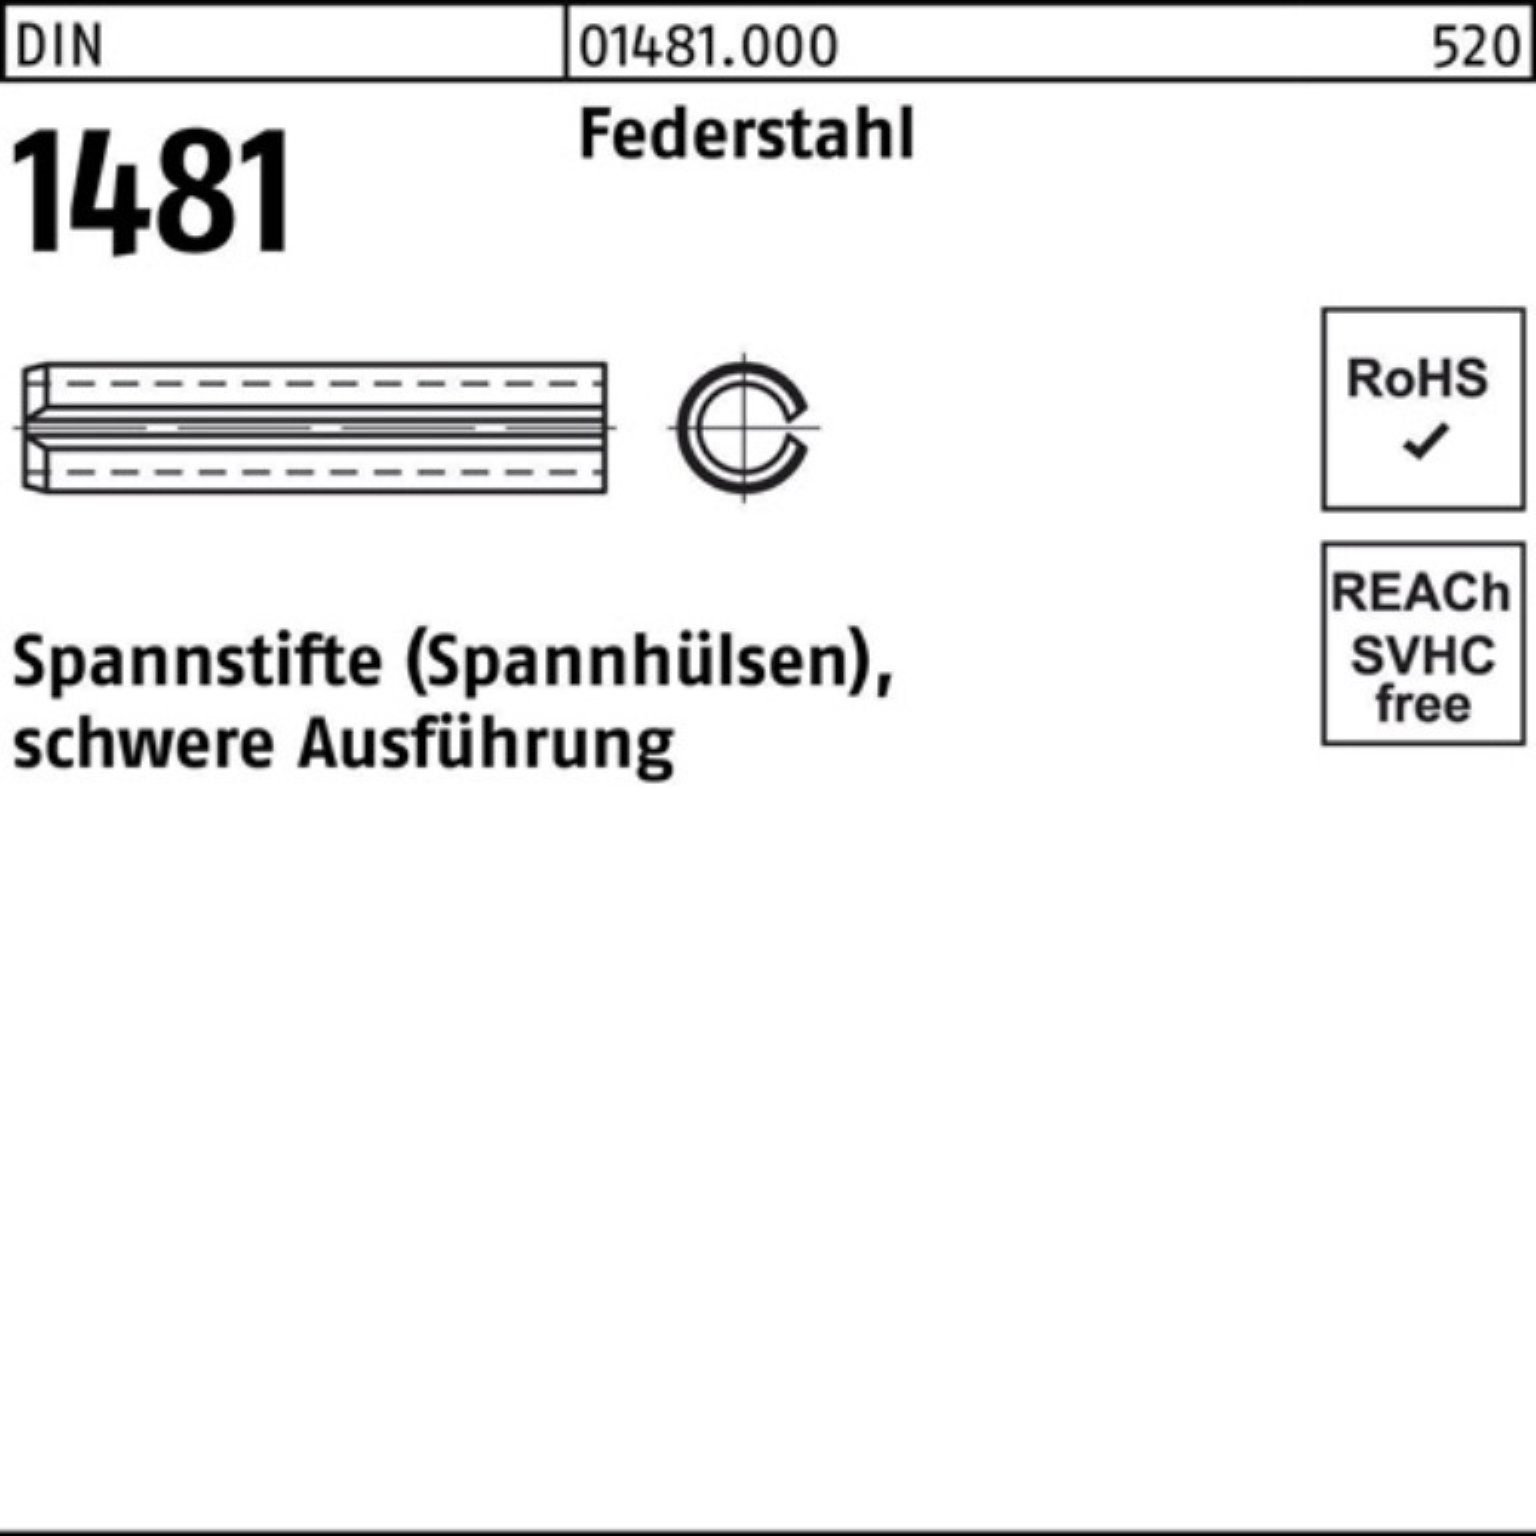 1481 DIN 4,5x 24 Ausführung Federstahl Spannstift Pack 100er Reyher schwere Spannstift